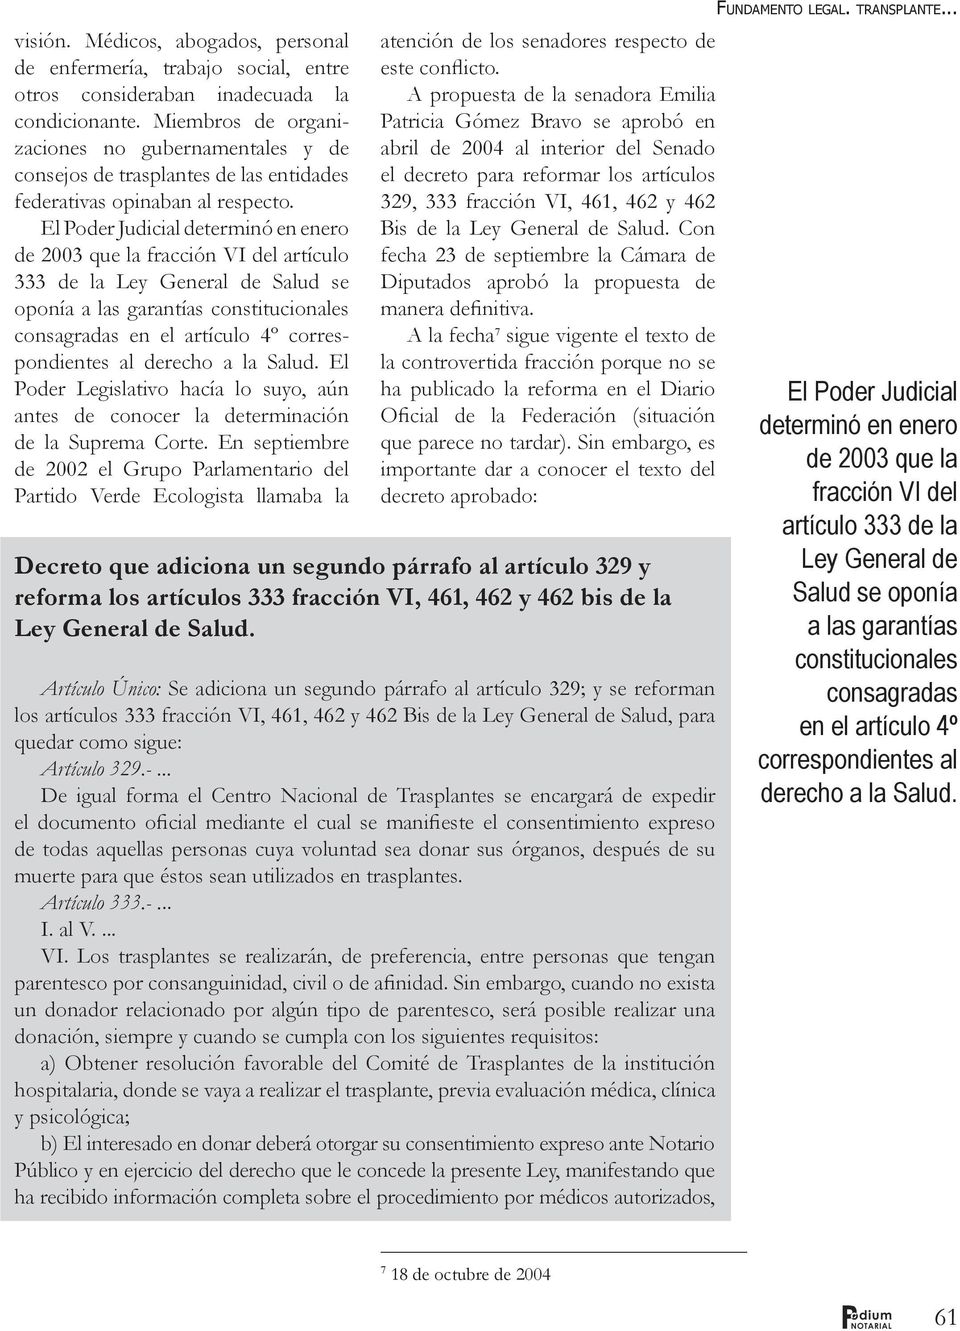 El Poder Judicial determinó en enero de 2003 que la fracción VI del artículo 333 de la Ley General de Salud se oponía a las garantías constitucionales consagradas en el artículo 4º correspondientes